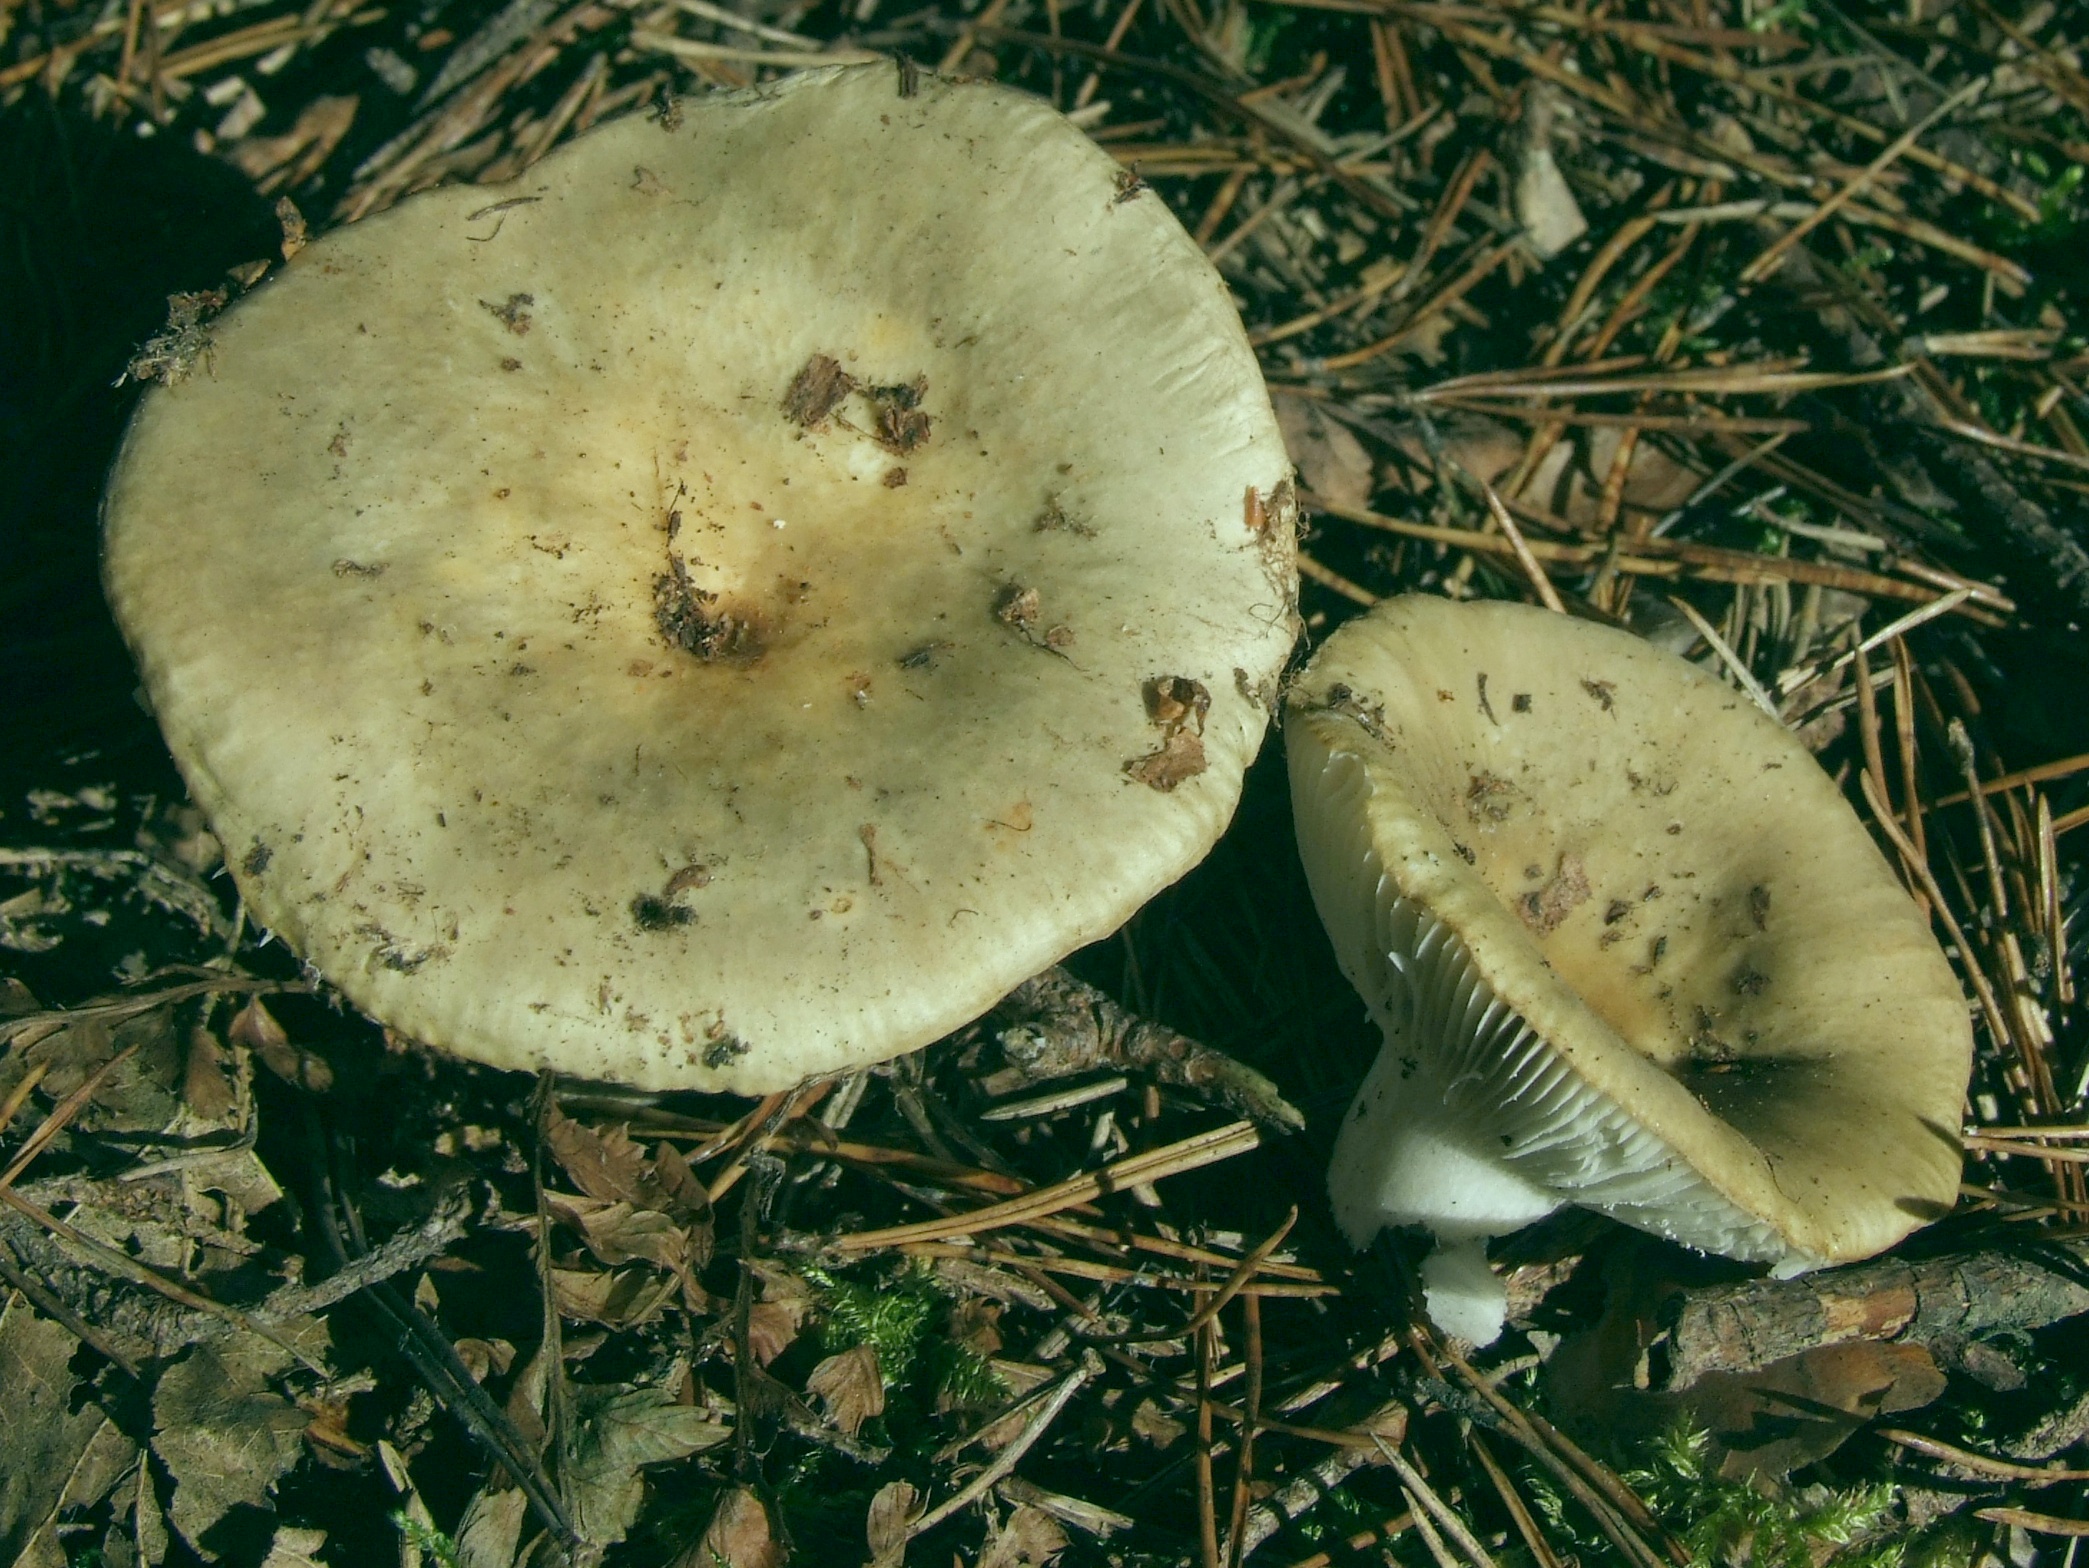 Зеленушка (рядовка зеленая) - описание гриба, где растет, фото двойников.